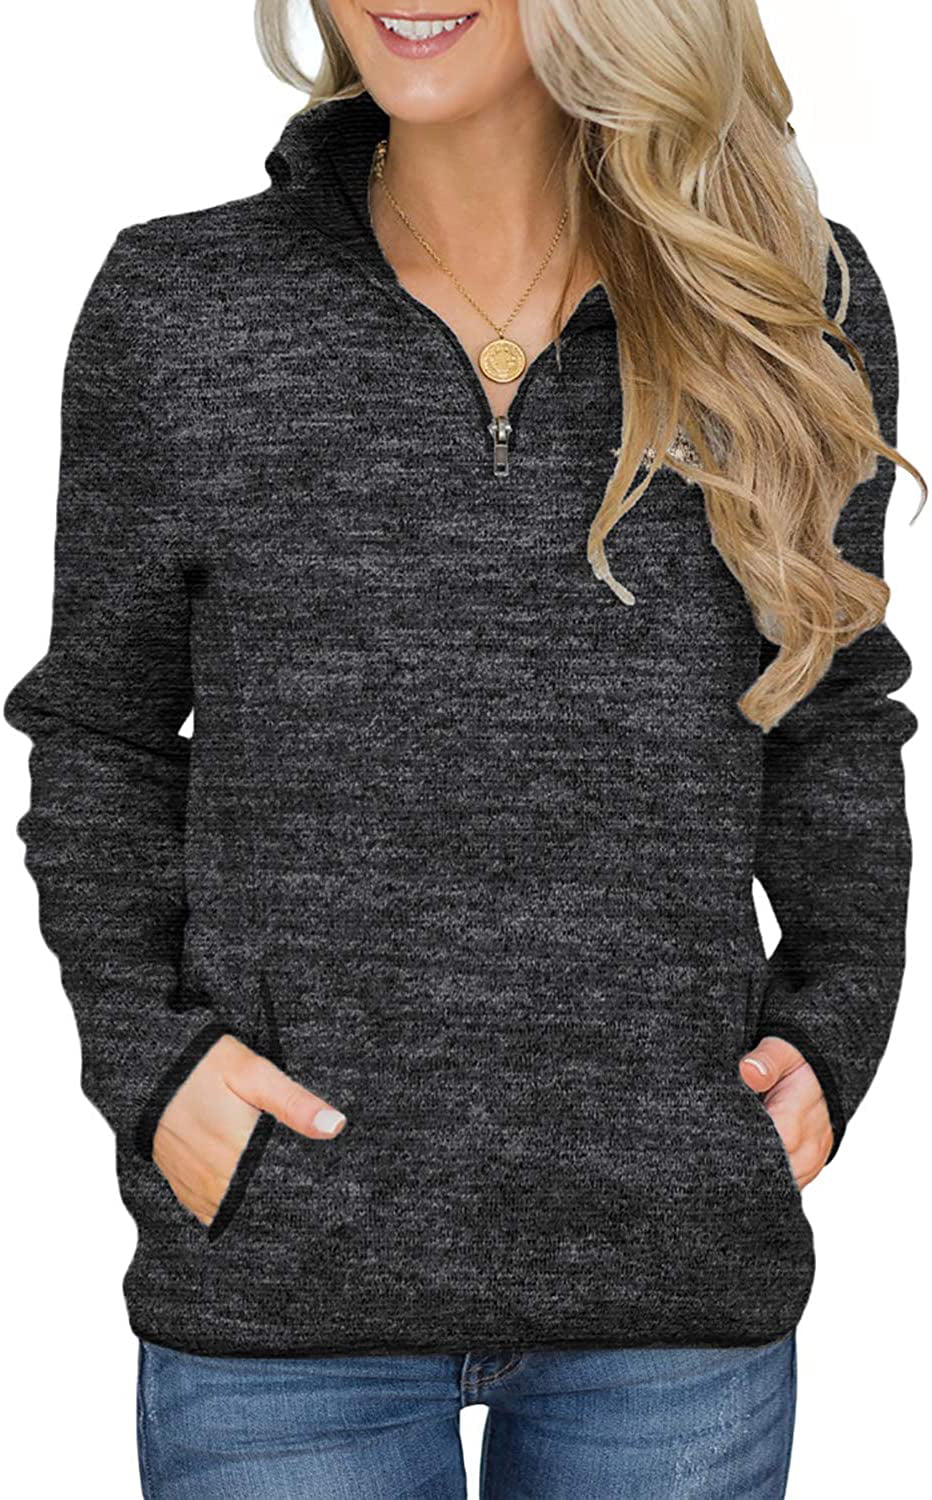 Women Quarter Zip Color Block Pullover Sweatshirt Tops With Pockets ...